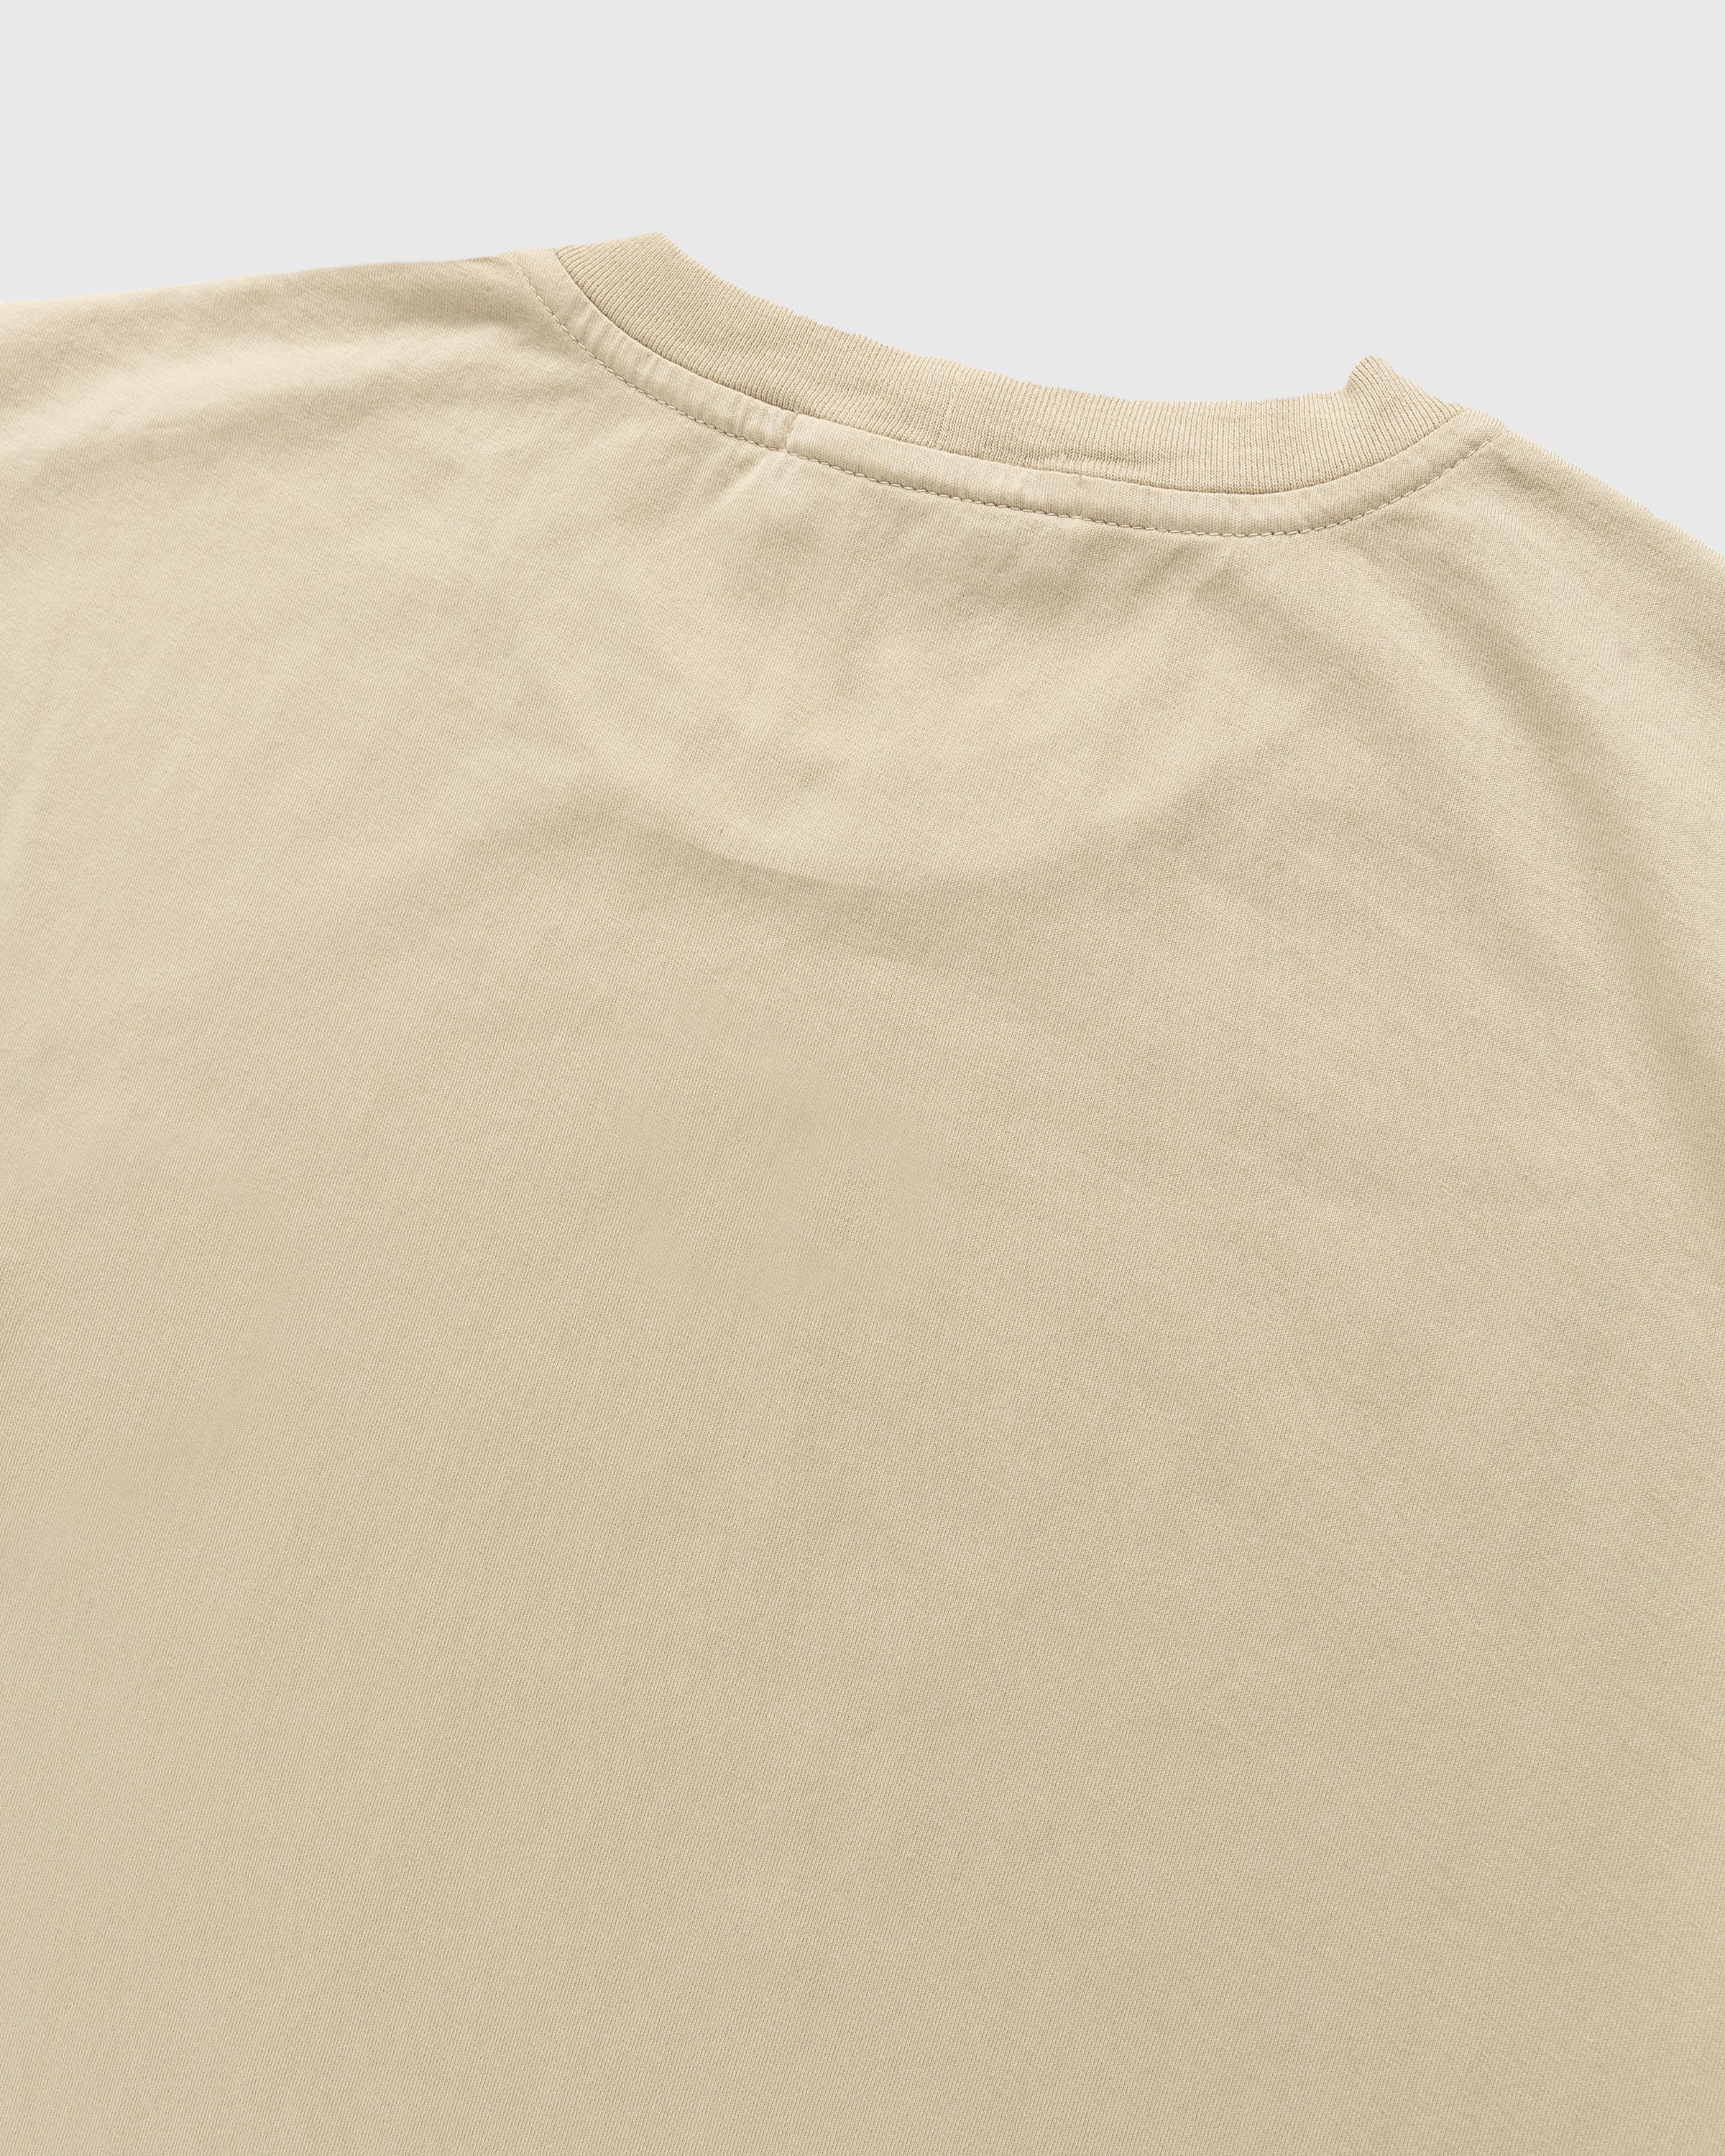 Stone Island - Garment-Dyed T-Shirt Beige - Clothing - Beige - Image 3